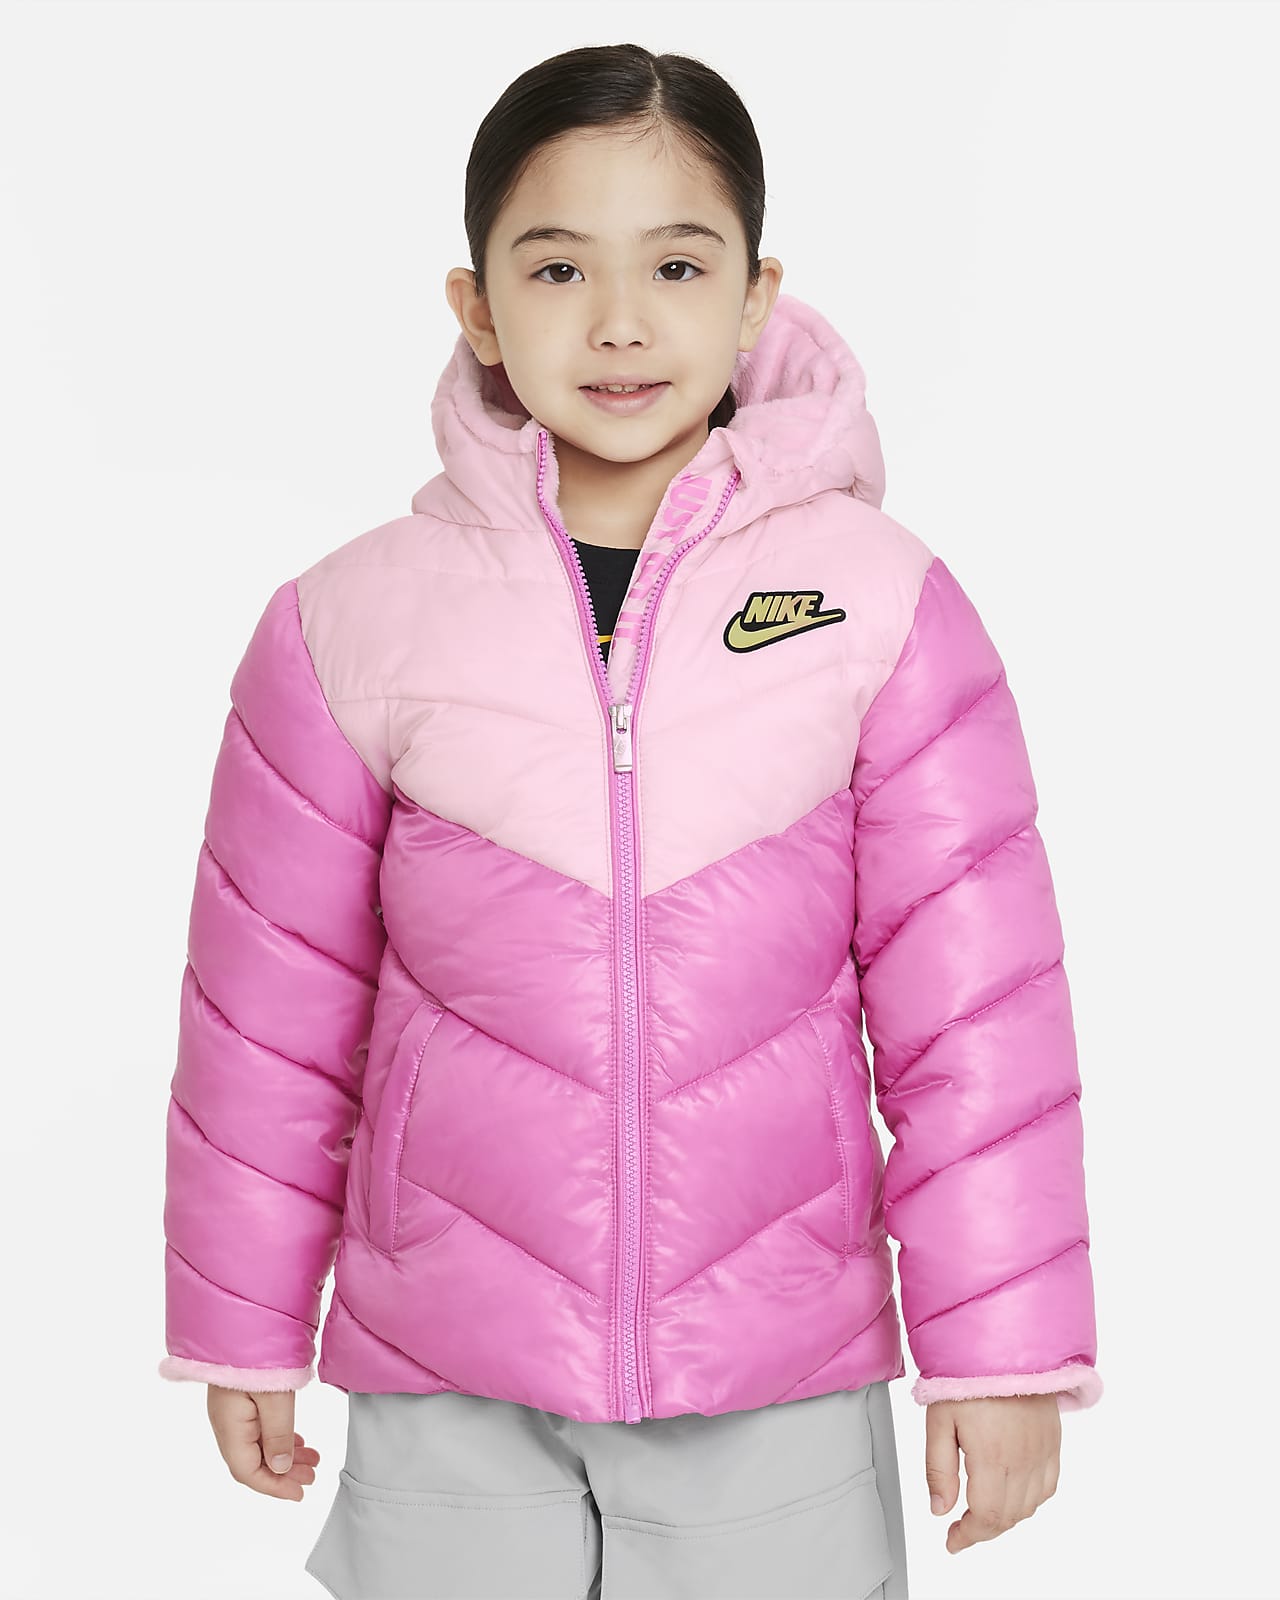 Nike Colorblock Chevron Puffer Jacket Little Kids Jacket